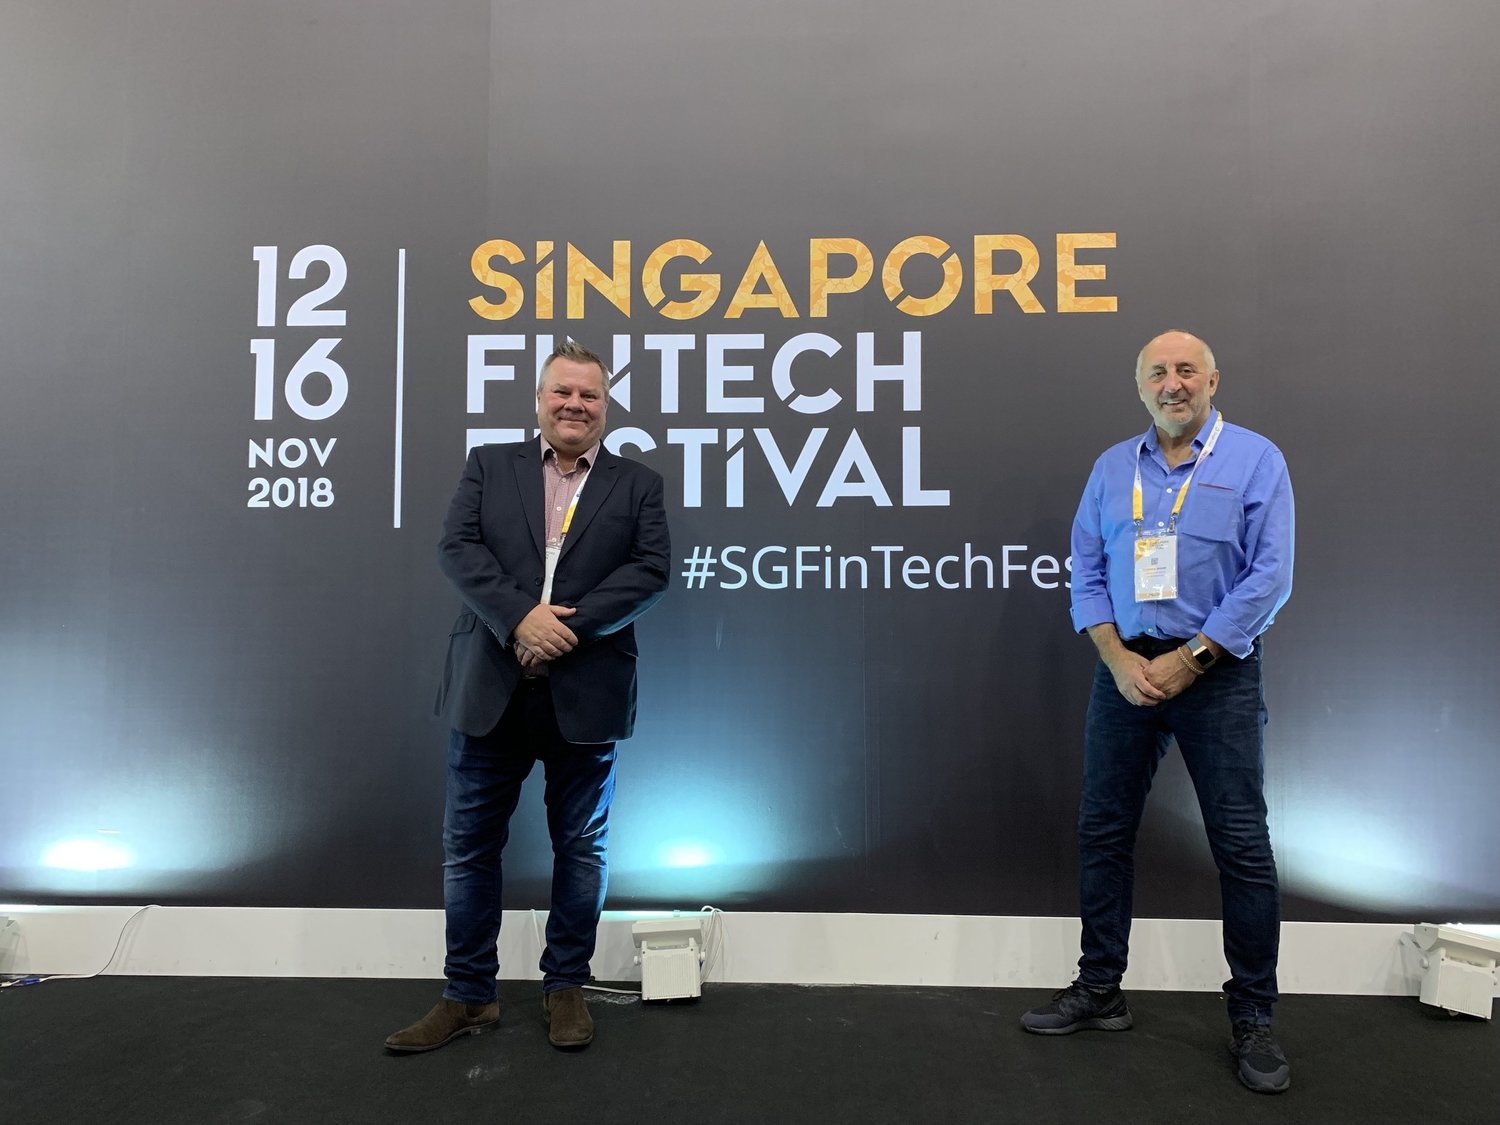 Singapore Fintech Festival 2018